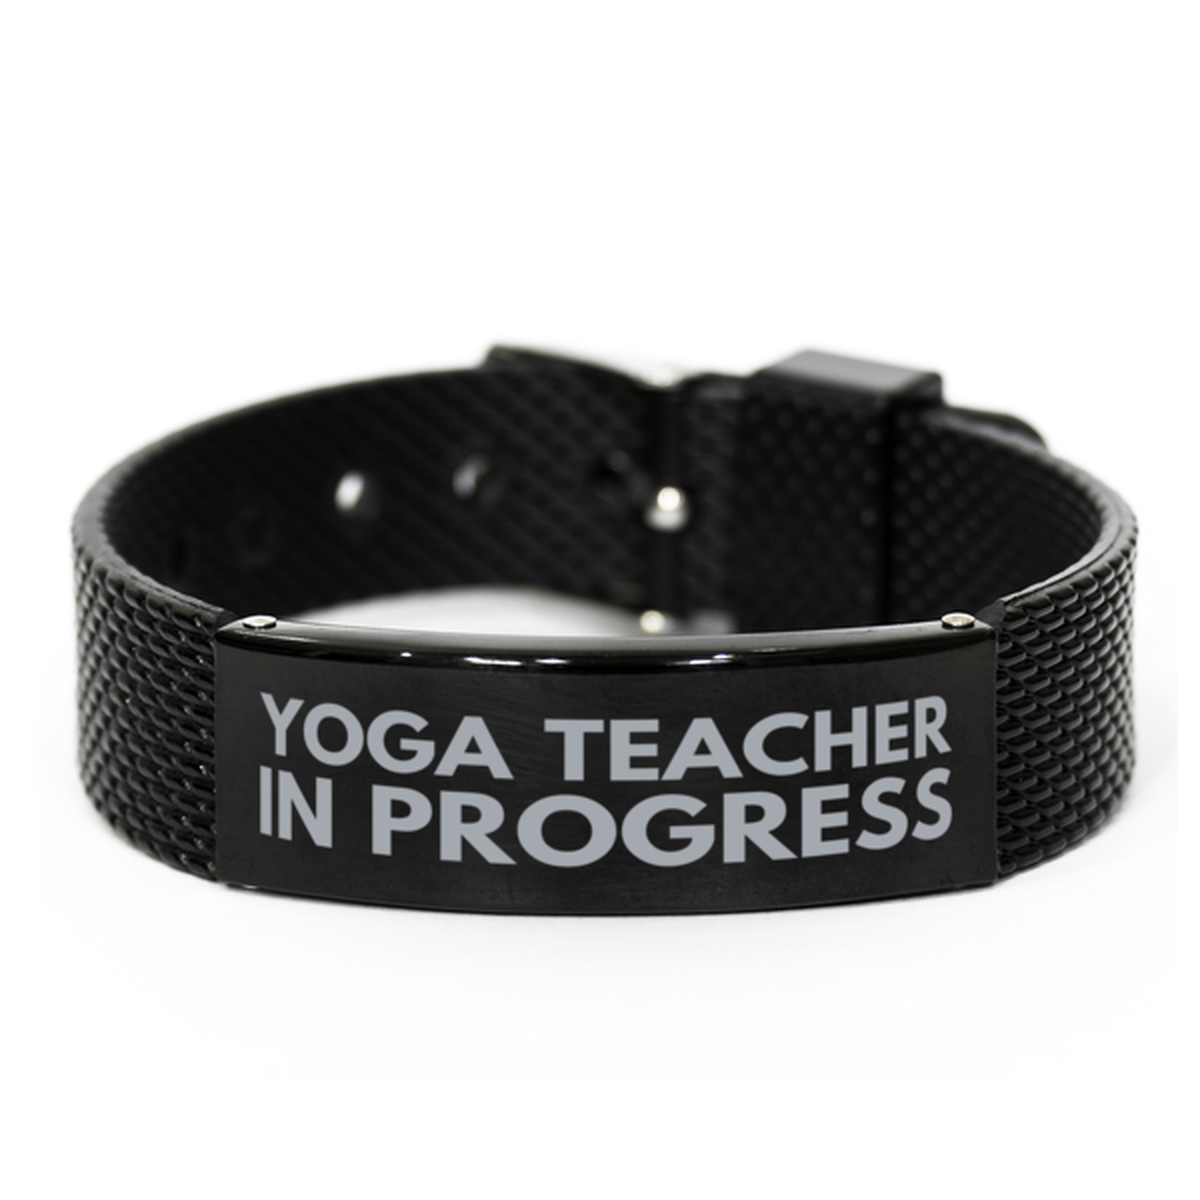 Inspirational Yoga Teacher Black Shark Mesh Bracelet, Yoga Teacher In Progress, Best Graduation Gifts for Students